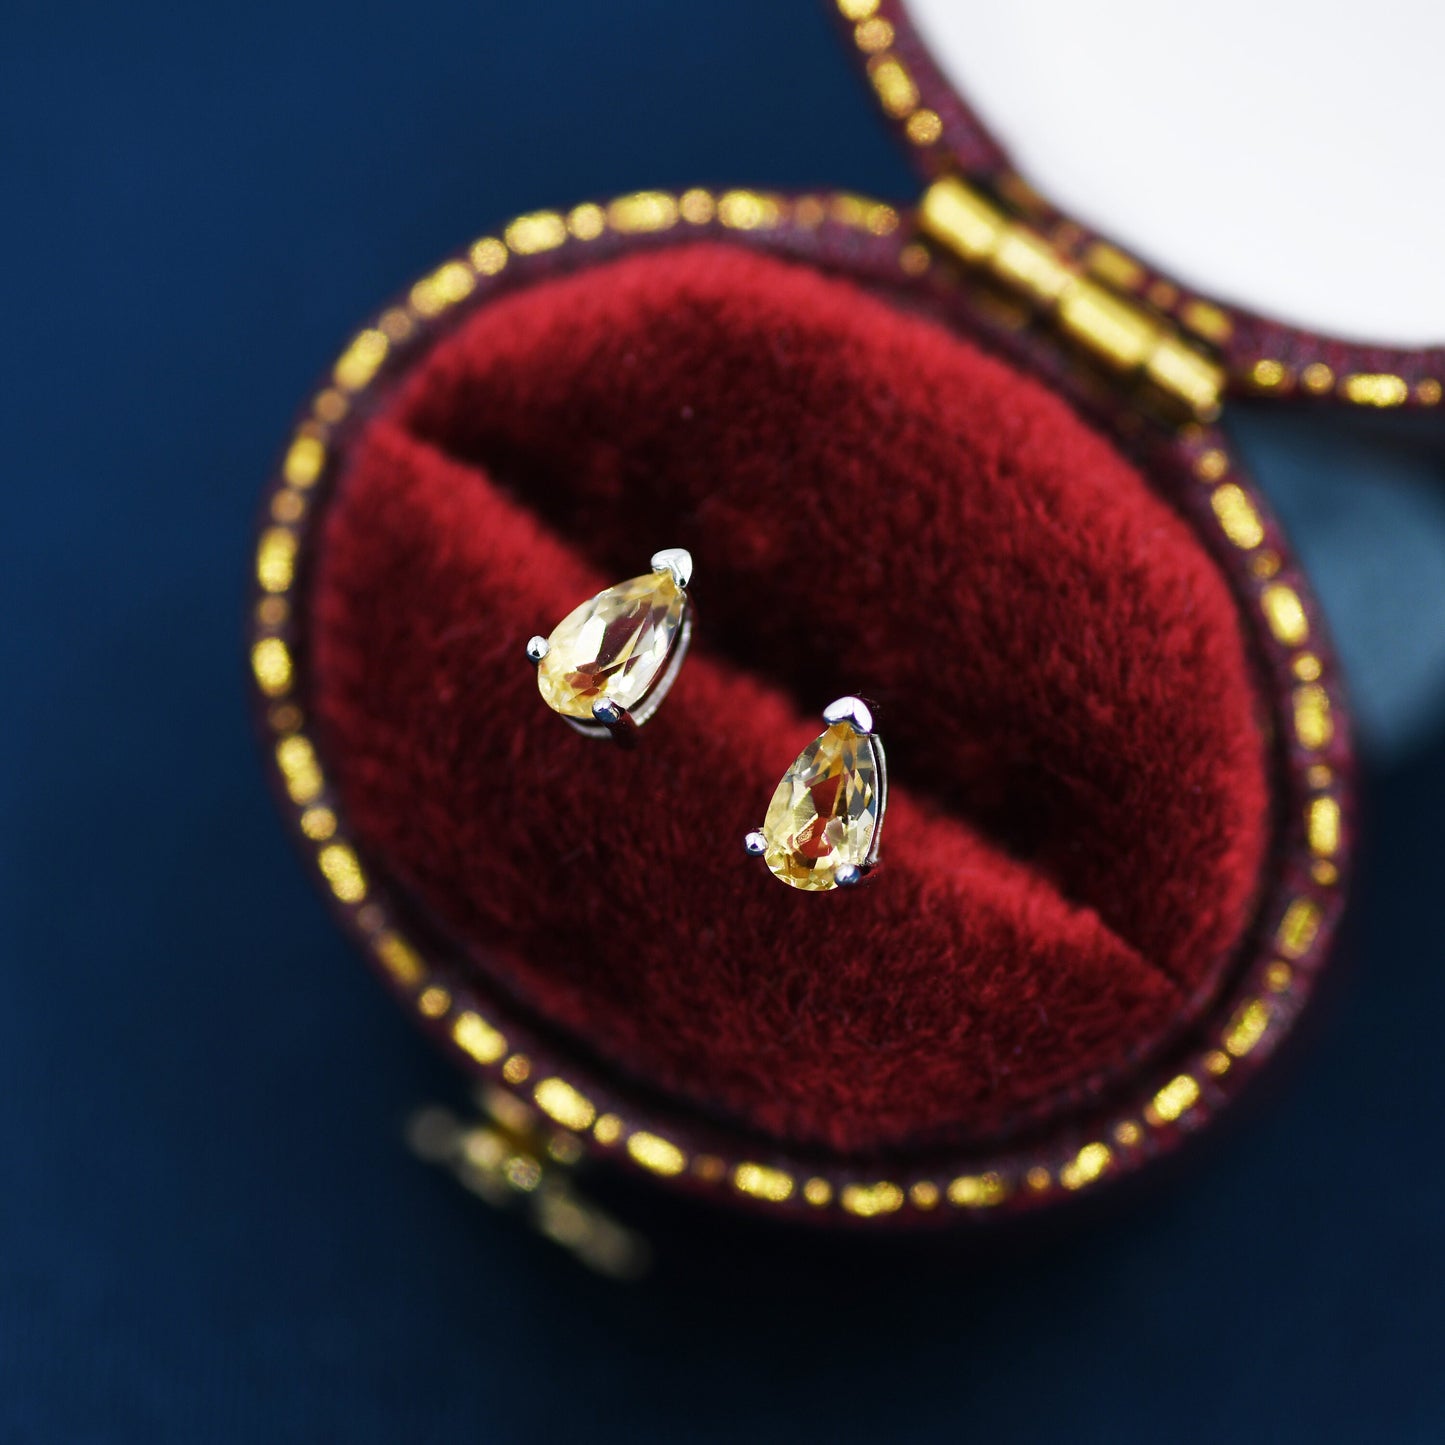 Genuine Citrine Crystal Droplet Stud Earrings in Sterling Silver, Natural Yellow Citrine Pear Shape Stud Earrings, November Birthstone